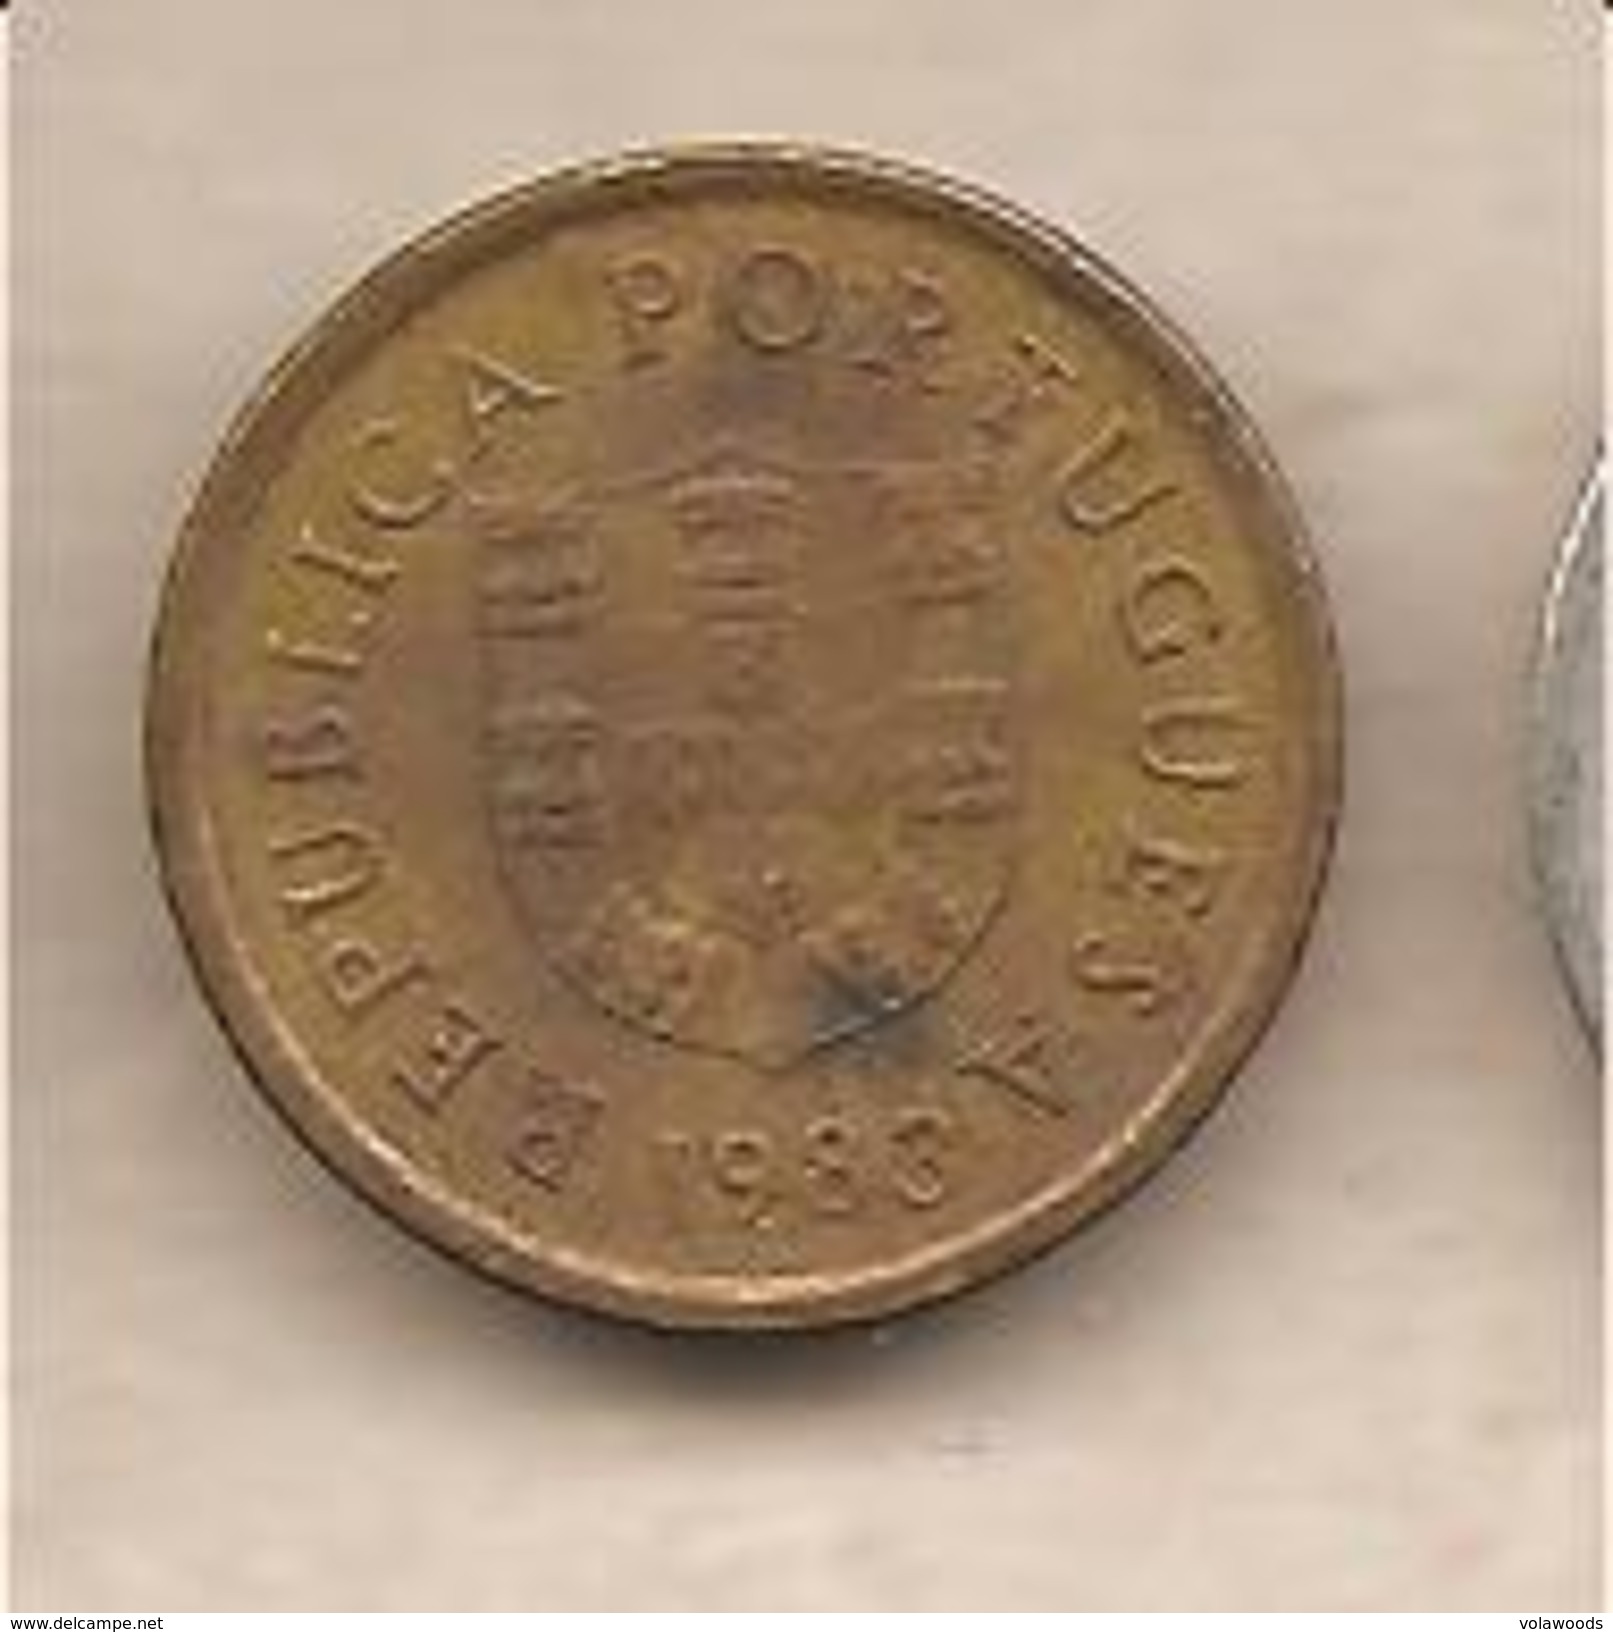 Portogallo - Moneta Circolata Da 1 Scudo - 1983 - Portogallo